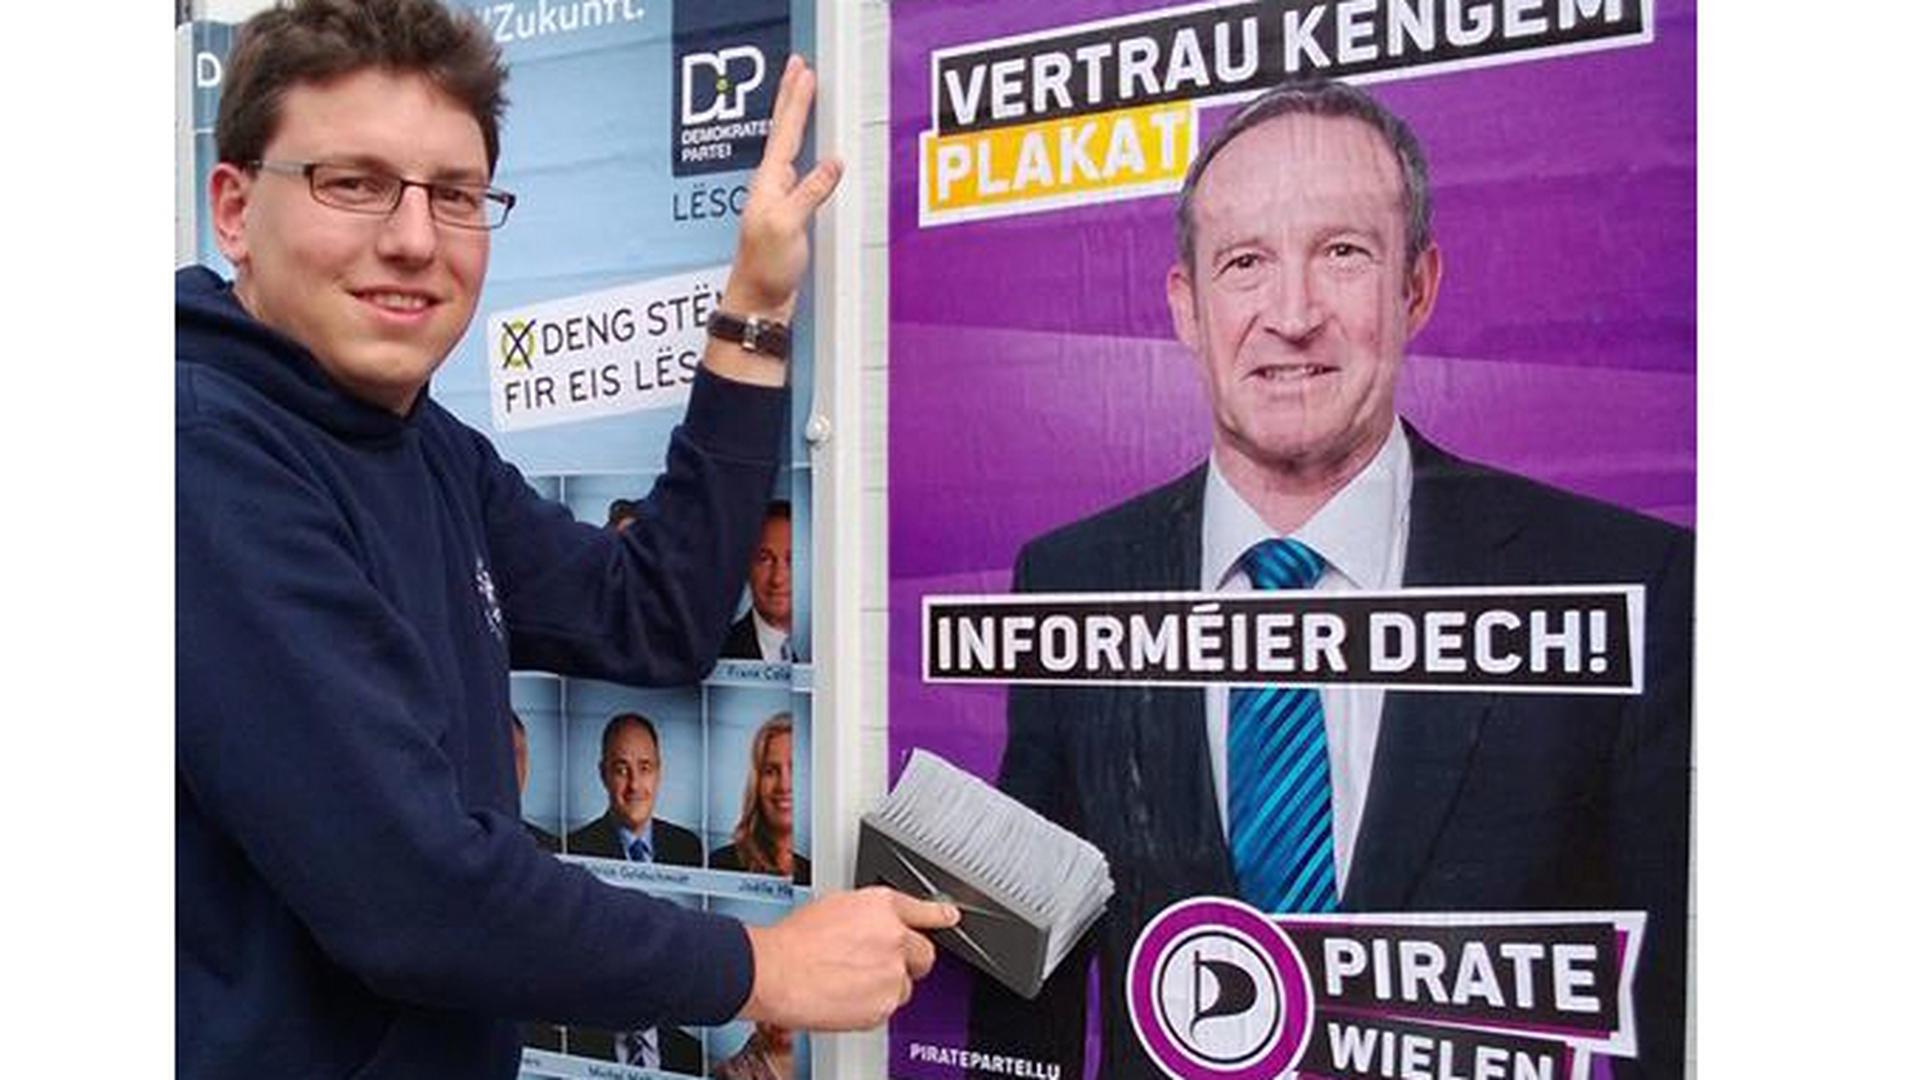 O Partido Pirata do Luxemburgo ("Piratepartei Lëtzebuerg") é o único que recorre a mensagens directas aos eleitores. "Não confie em ninguém: informe-se", pode ler-se neste cartaz afixado pelo líder do partido, Sven Clement